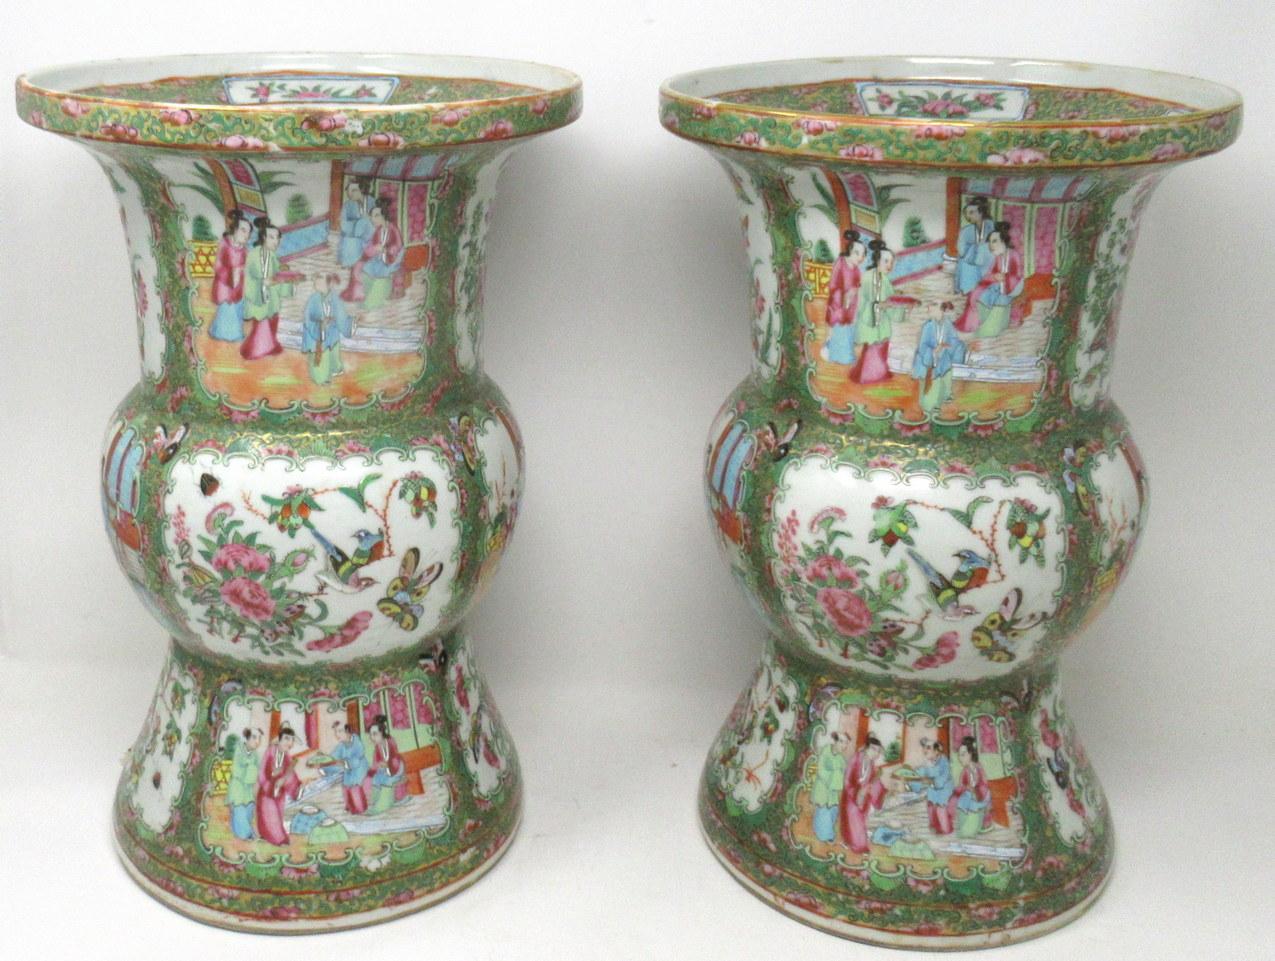 Paire de vases en porcelaine chinoise cantonaise décorés à la main, d'une rare forme gu, d'assez bonnes proportions (voir dernière image in situ), datant du milieu du XIXe siècle, peut-être plus tôt.

Les principaux corps extérieurs de forme